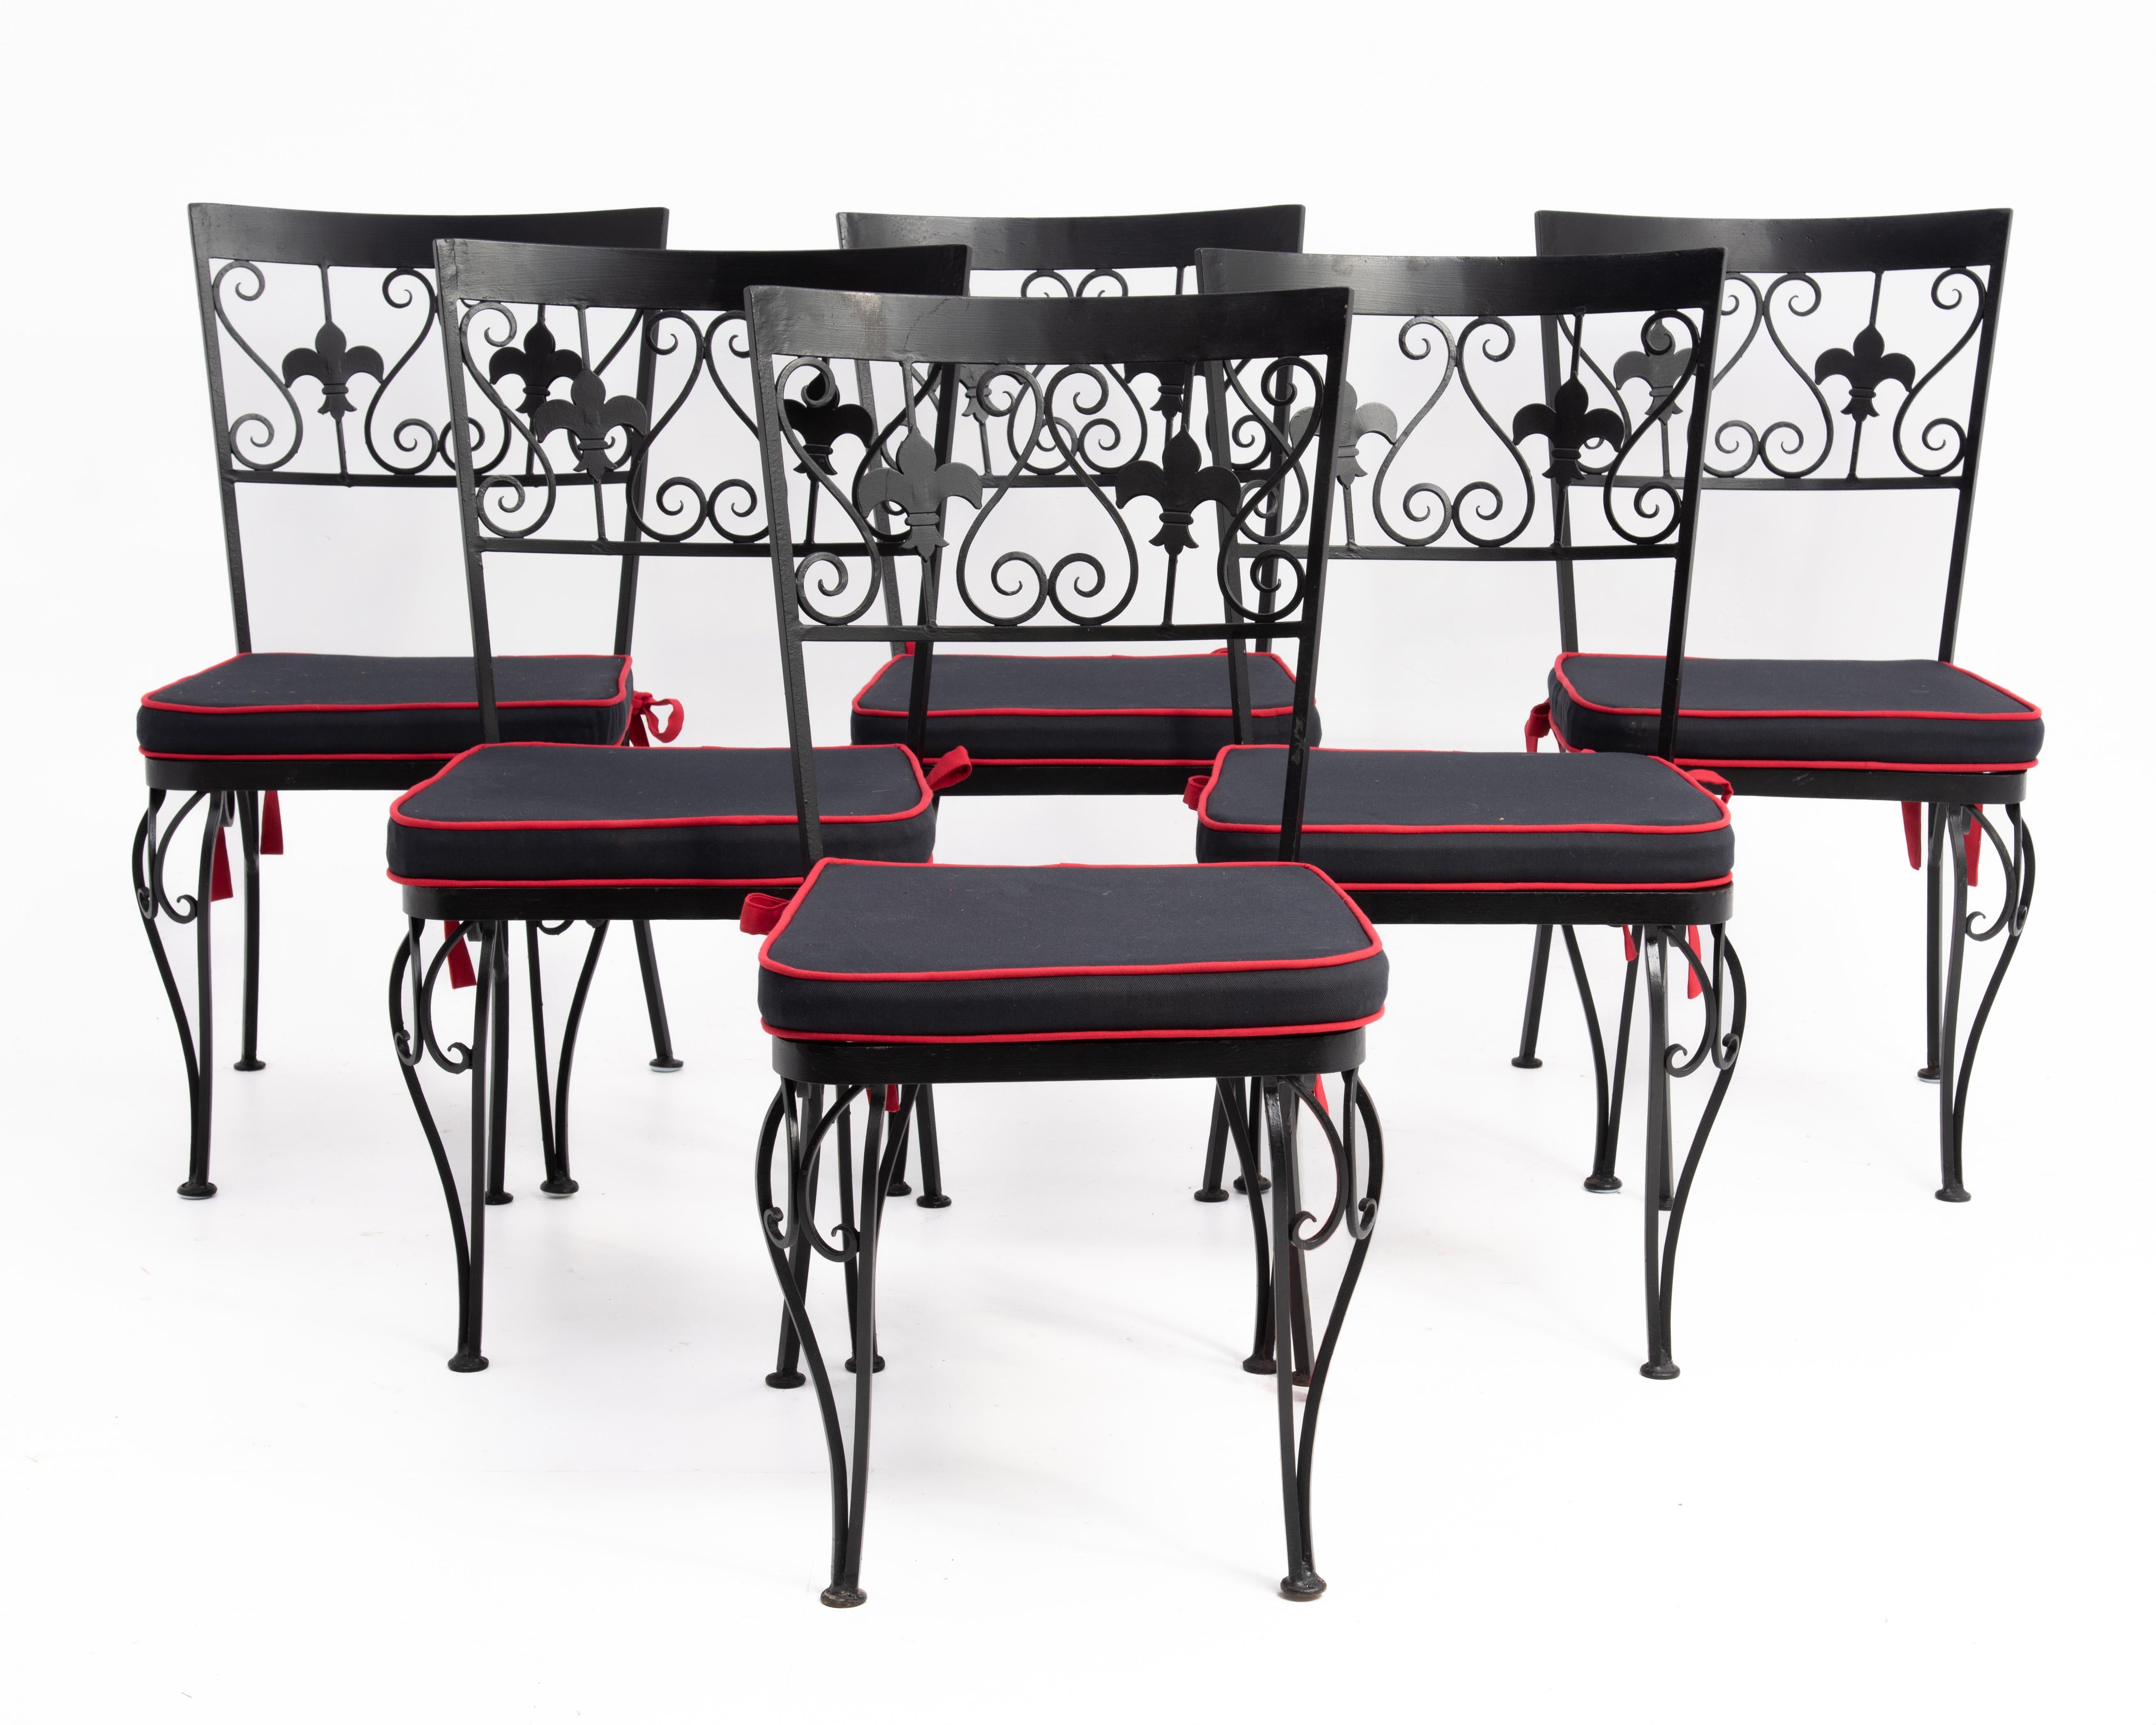 Ein stilvolles Set aus sechs schmiedeeisernen Esszimmerstühlen mit Netzsitzen, handgebundenen Sitzkissen und Fleur-De-Lis-Dekoration. Sonderanfertigung in Amerika für ein Restaurant in New York City in den 1960er Jahren. 
Die Sitzhöhe ohne Kissen